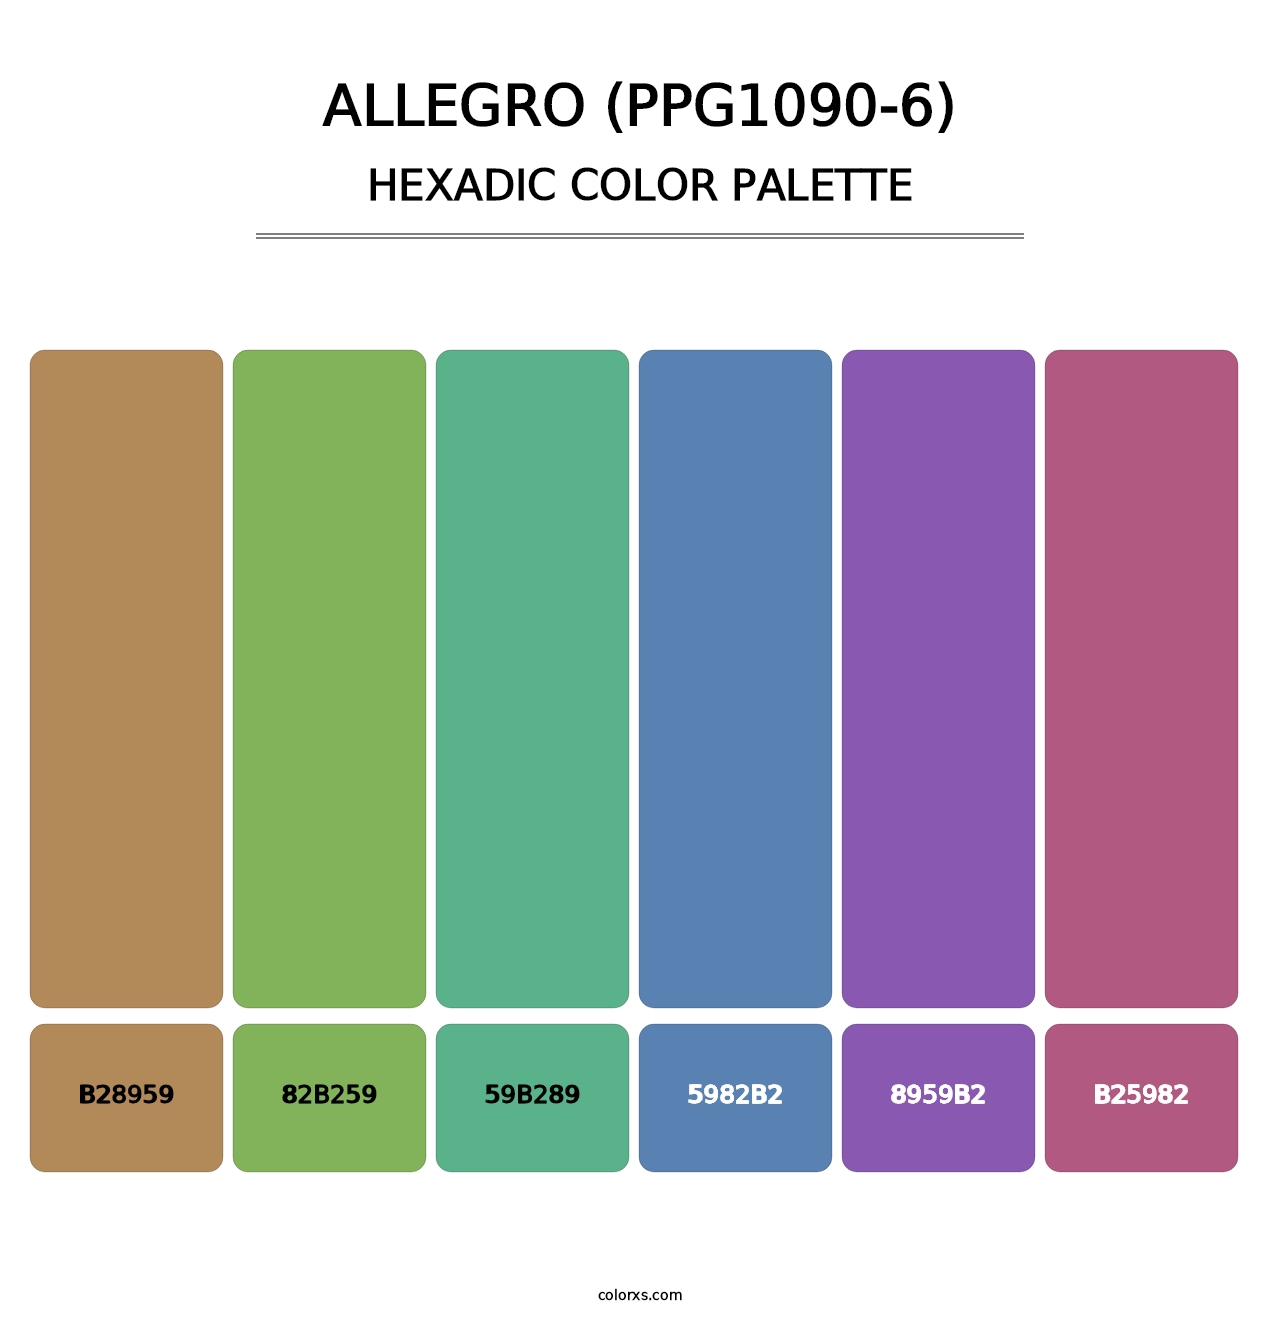 Allegro (PPG1090-6) - Hexadic Color Palette